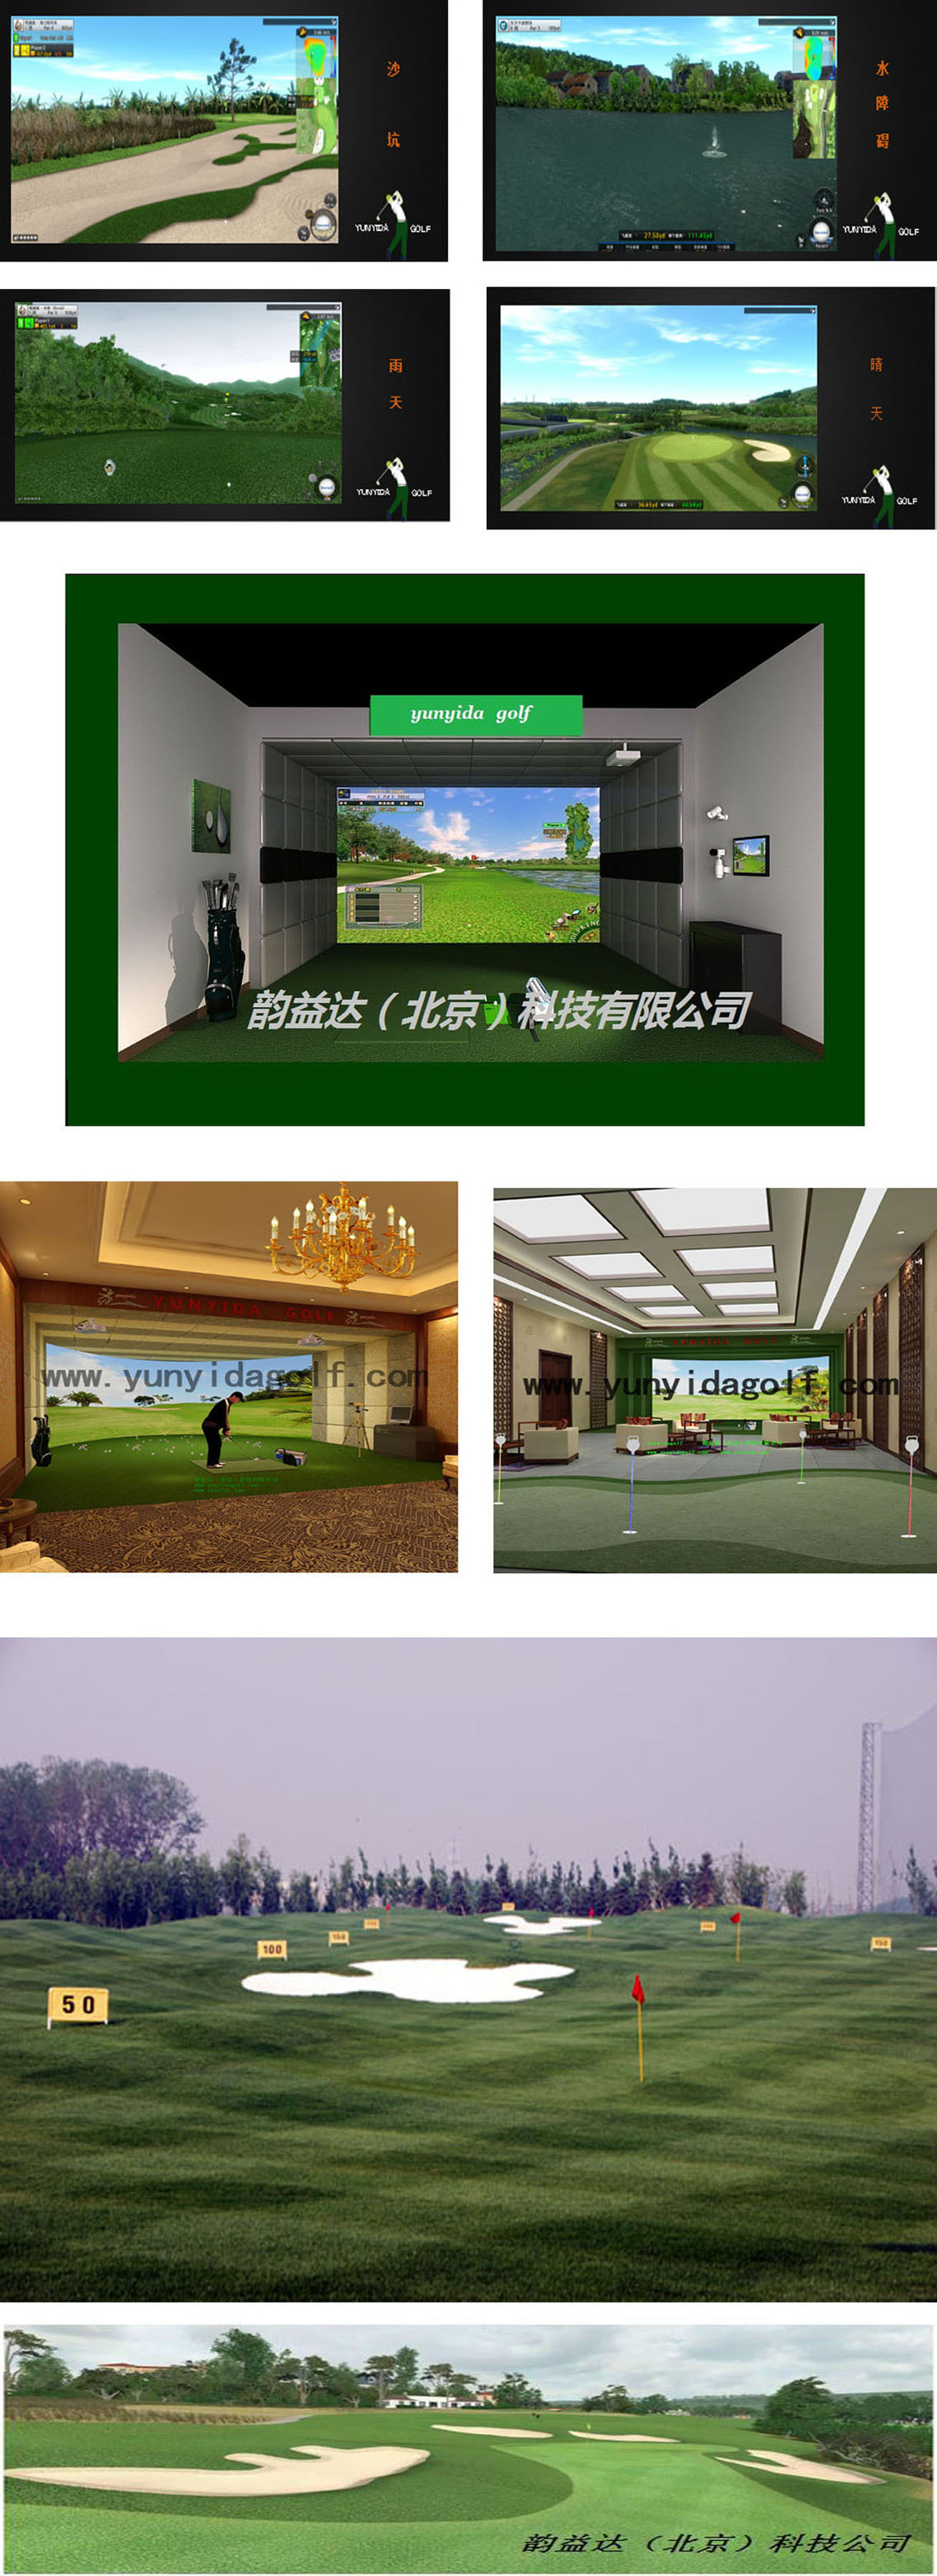 模拟高尔夫球场 三.jpg